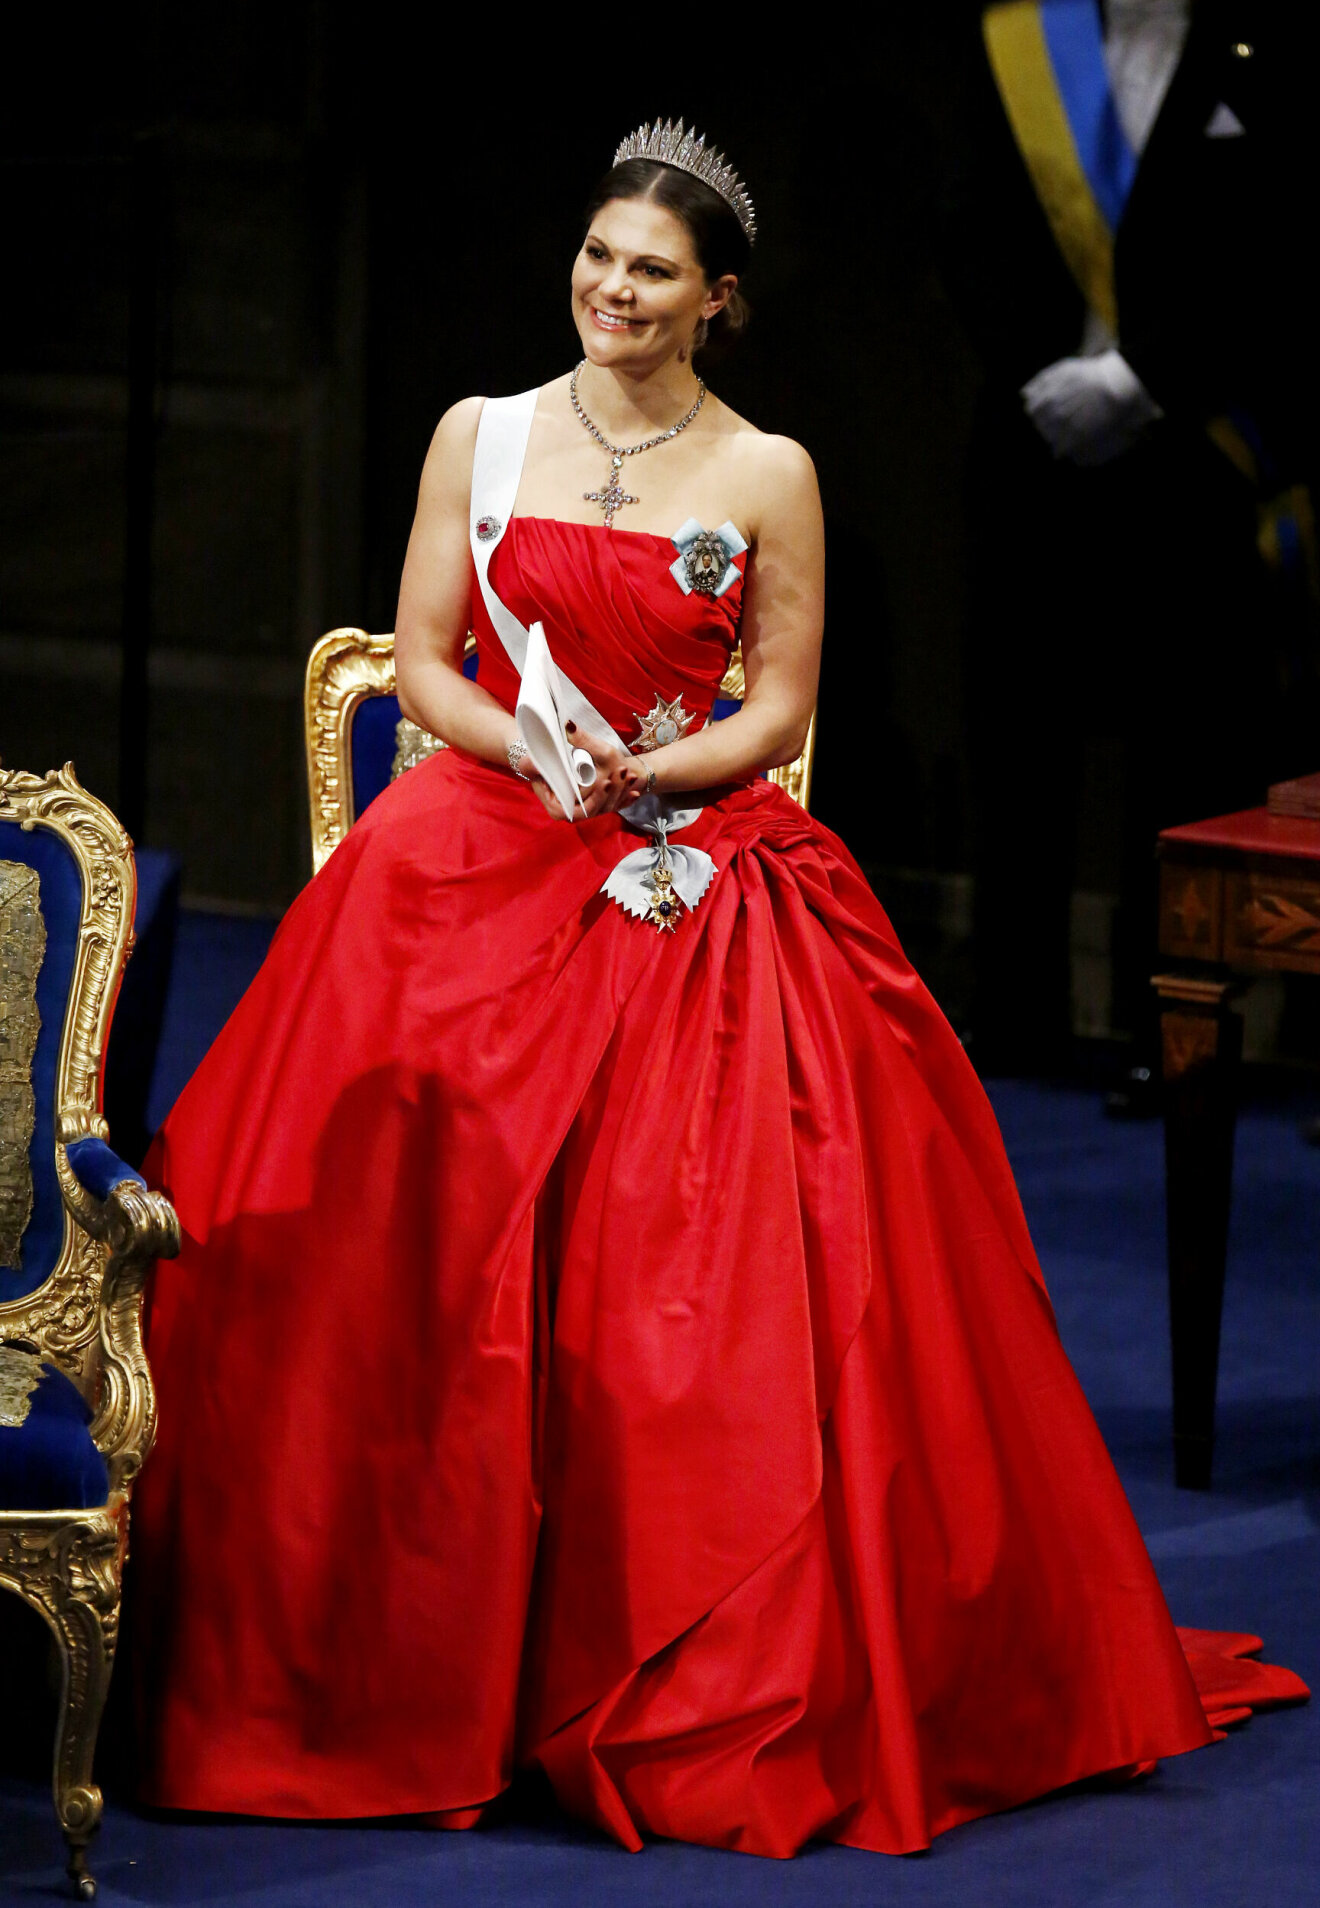 Kronprinsessan Victoria vid Nobelfesten 2014 i en röd klänning.